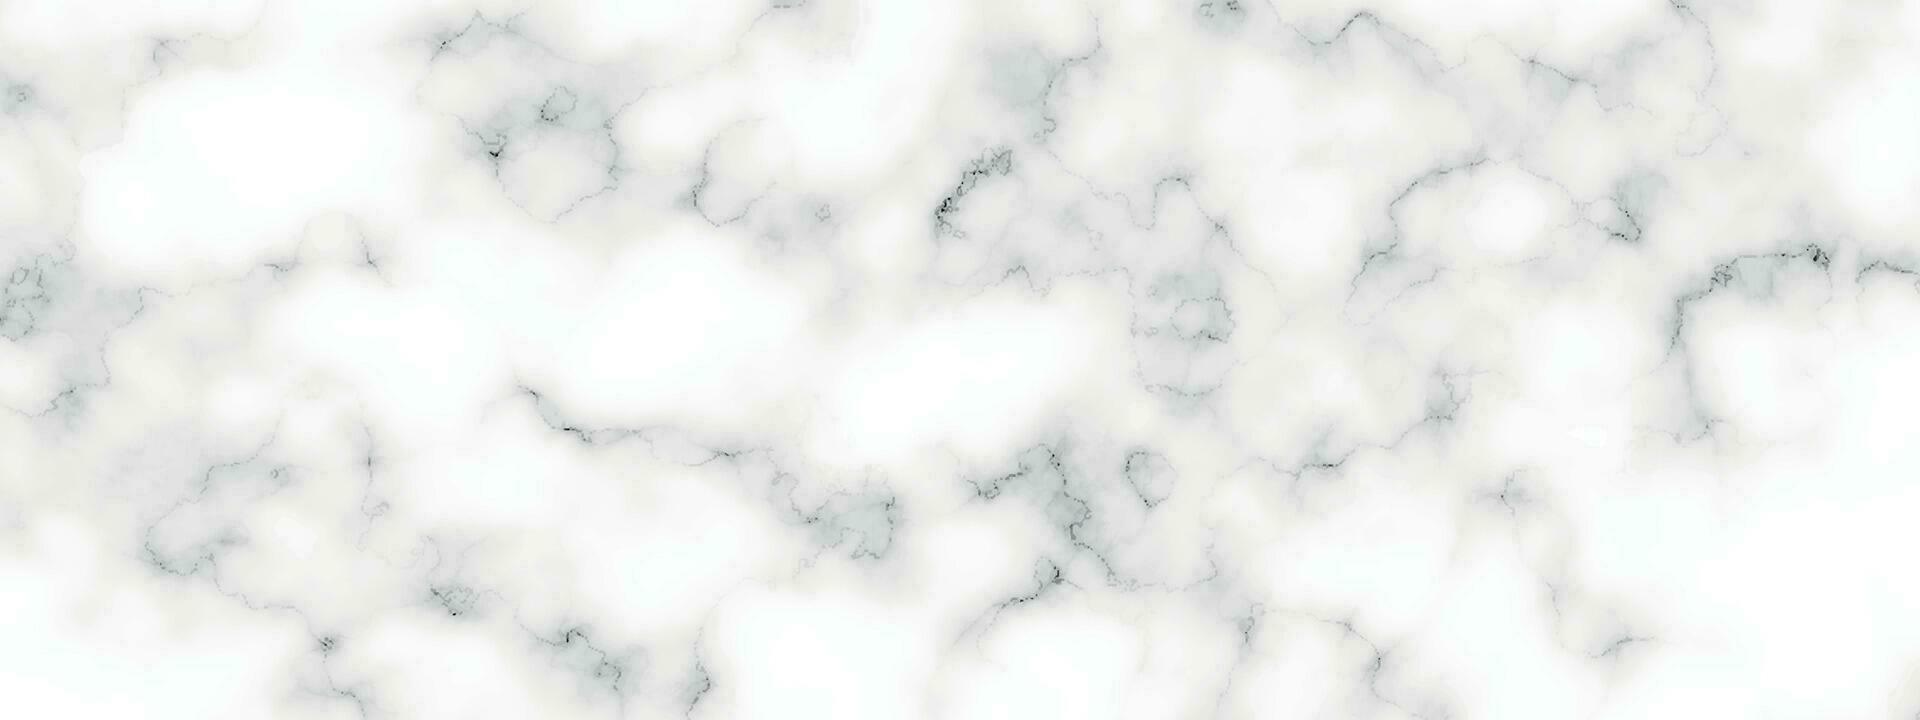 marmor granit vit panorama bakgrund. abstrakt ljus elegant svart do golv, keramisk textur sten platta. marmor vektor textur bakgrund med hög upplösning.